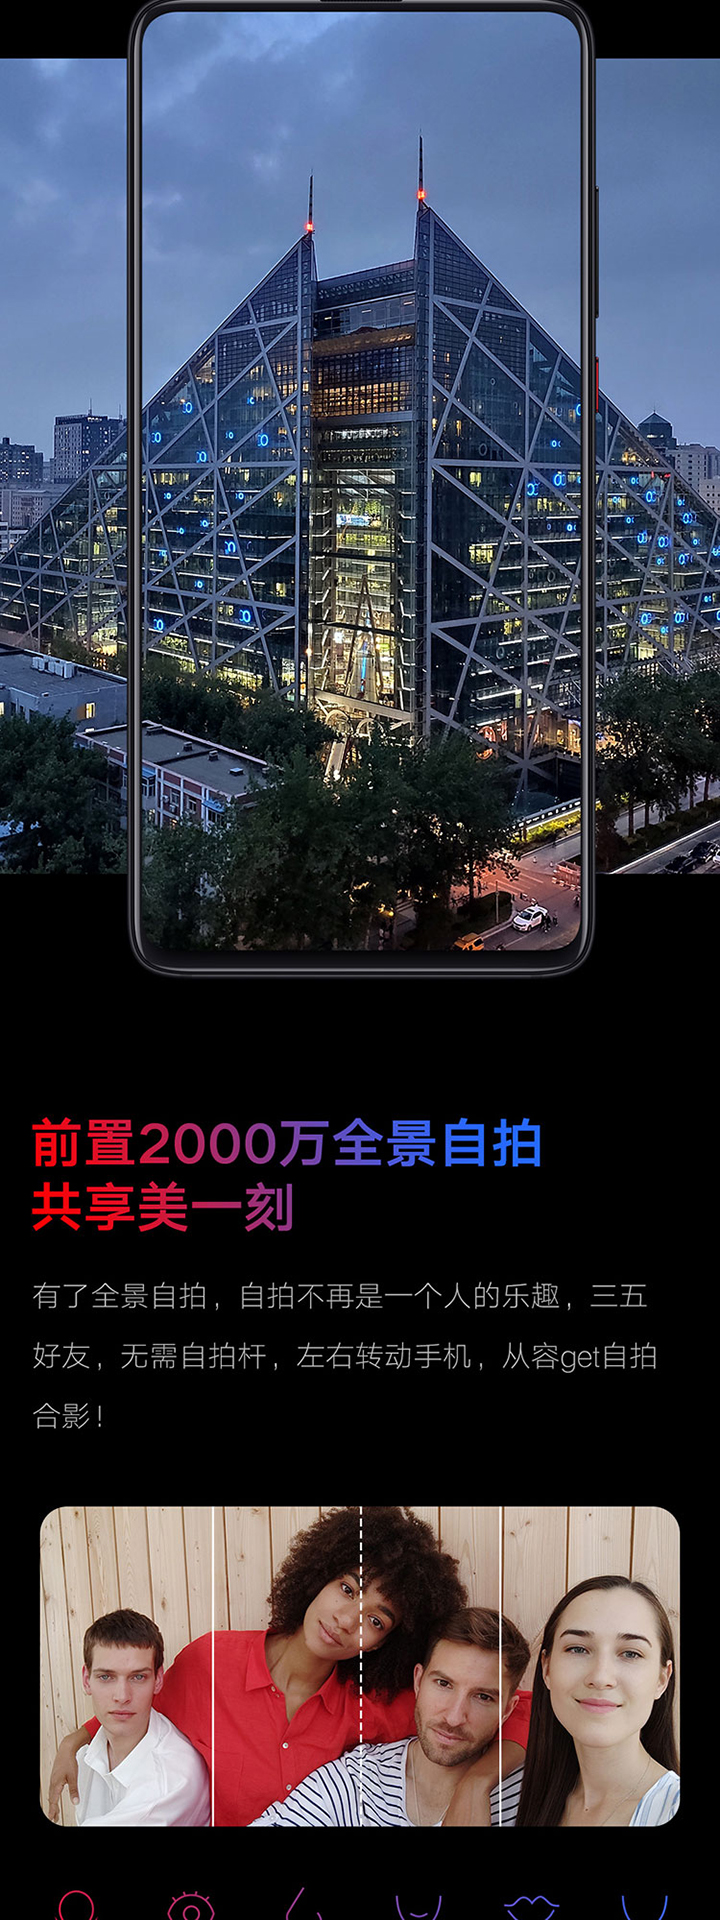 红米Redmi K20 Pro手机免费试用,评测